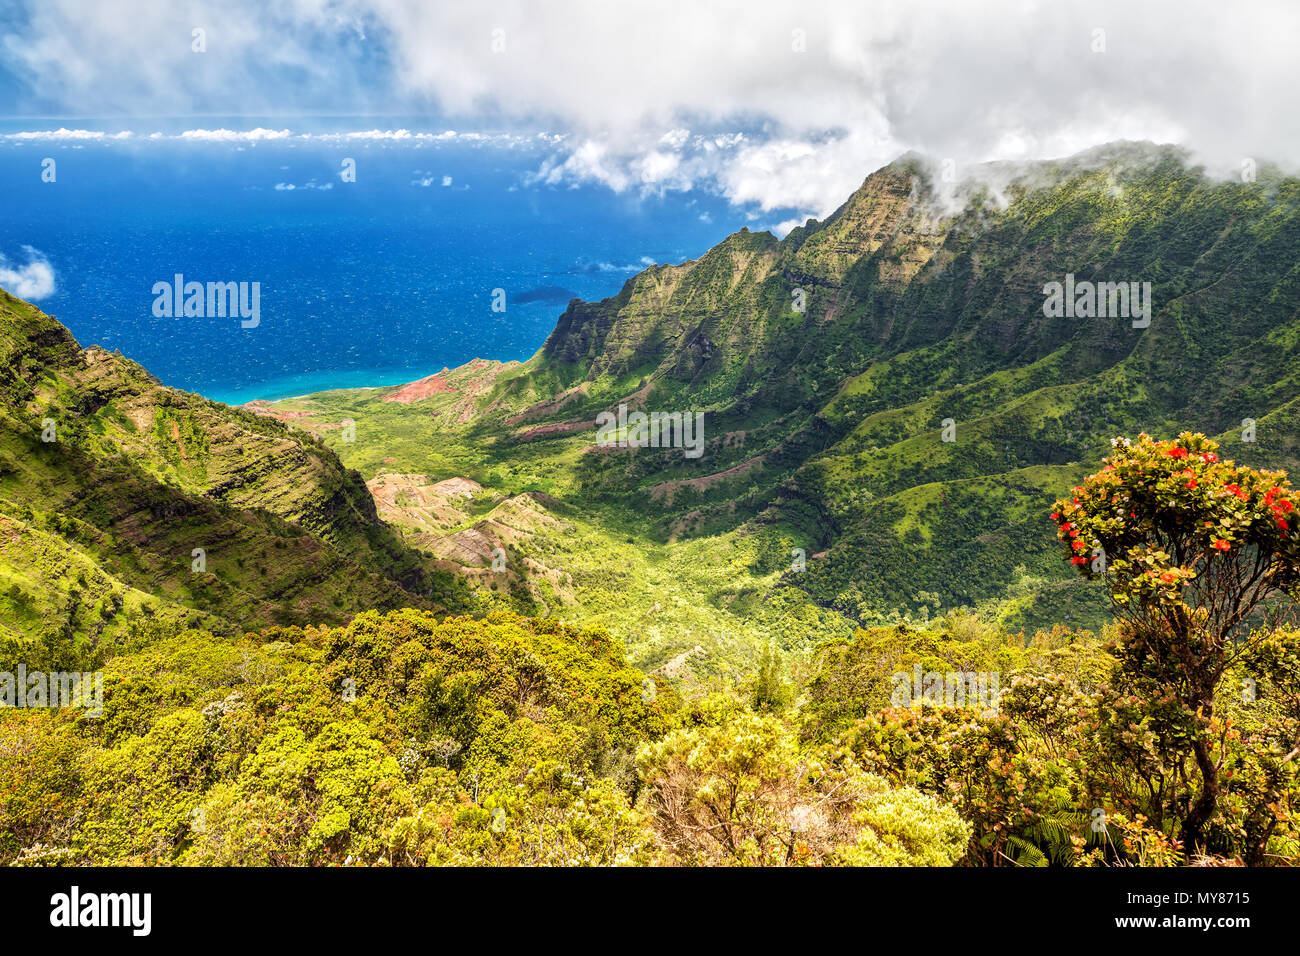 Panorama View over Kalalau Valley, Kauai, Hawaii Stock Photo